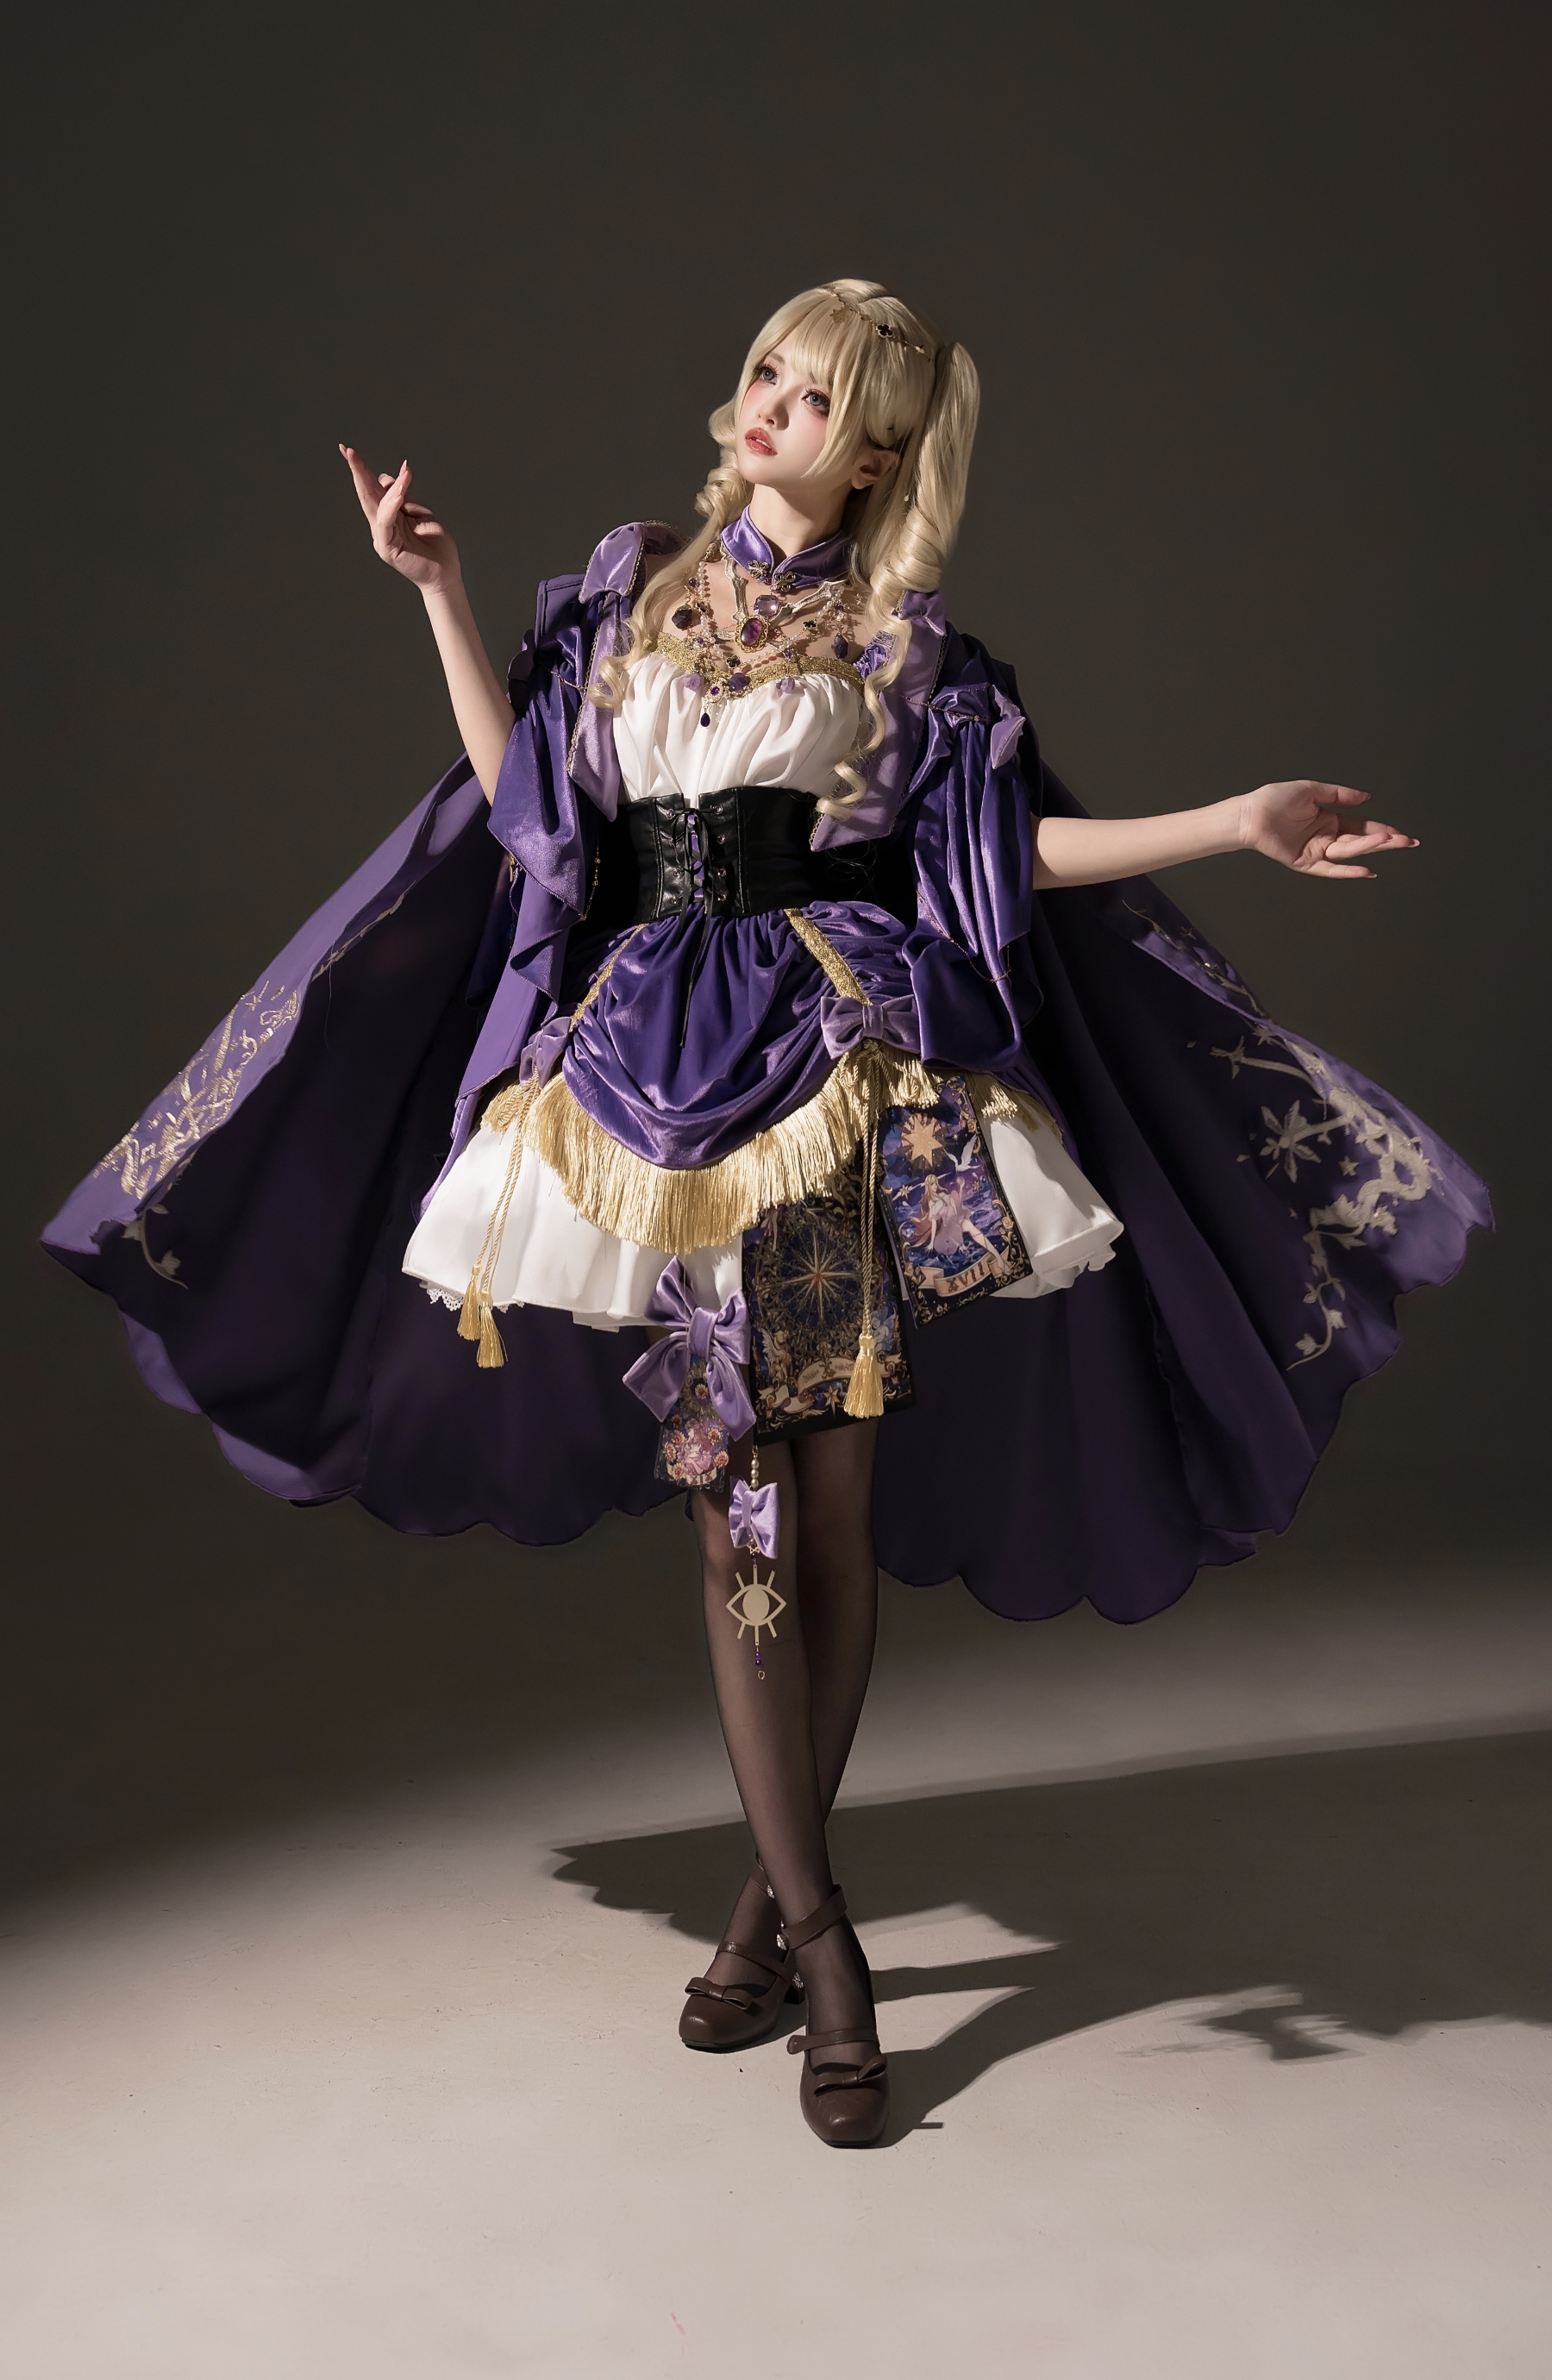 命运之轮【尾款】紫色神秘风OP塔罗元素优雅复古Lolita白日梦想家-图2